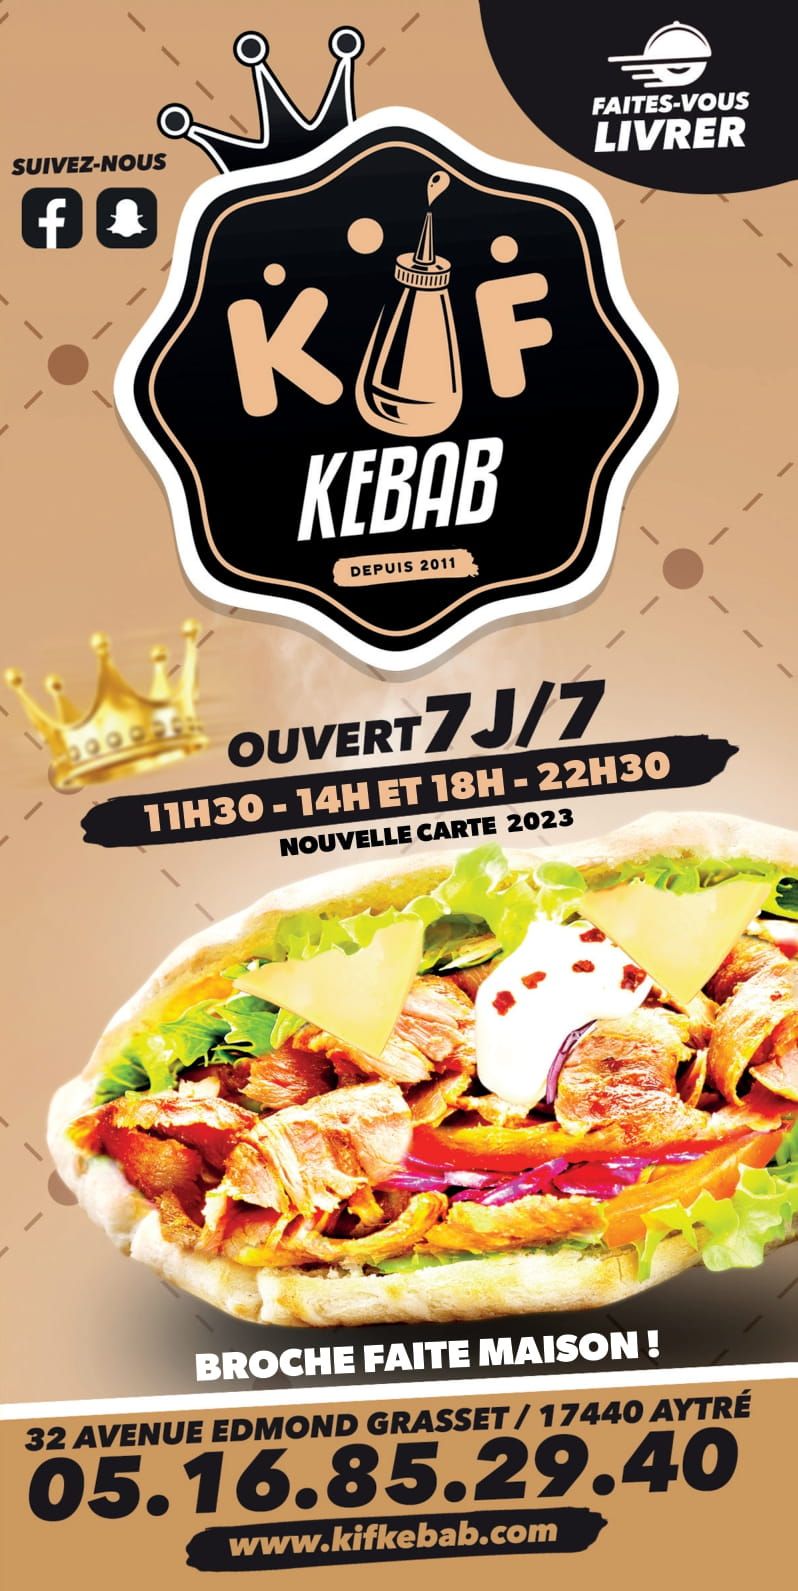 Kif Kebab Aytré : Le site officiel ! - Faites-vous un bon kif